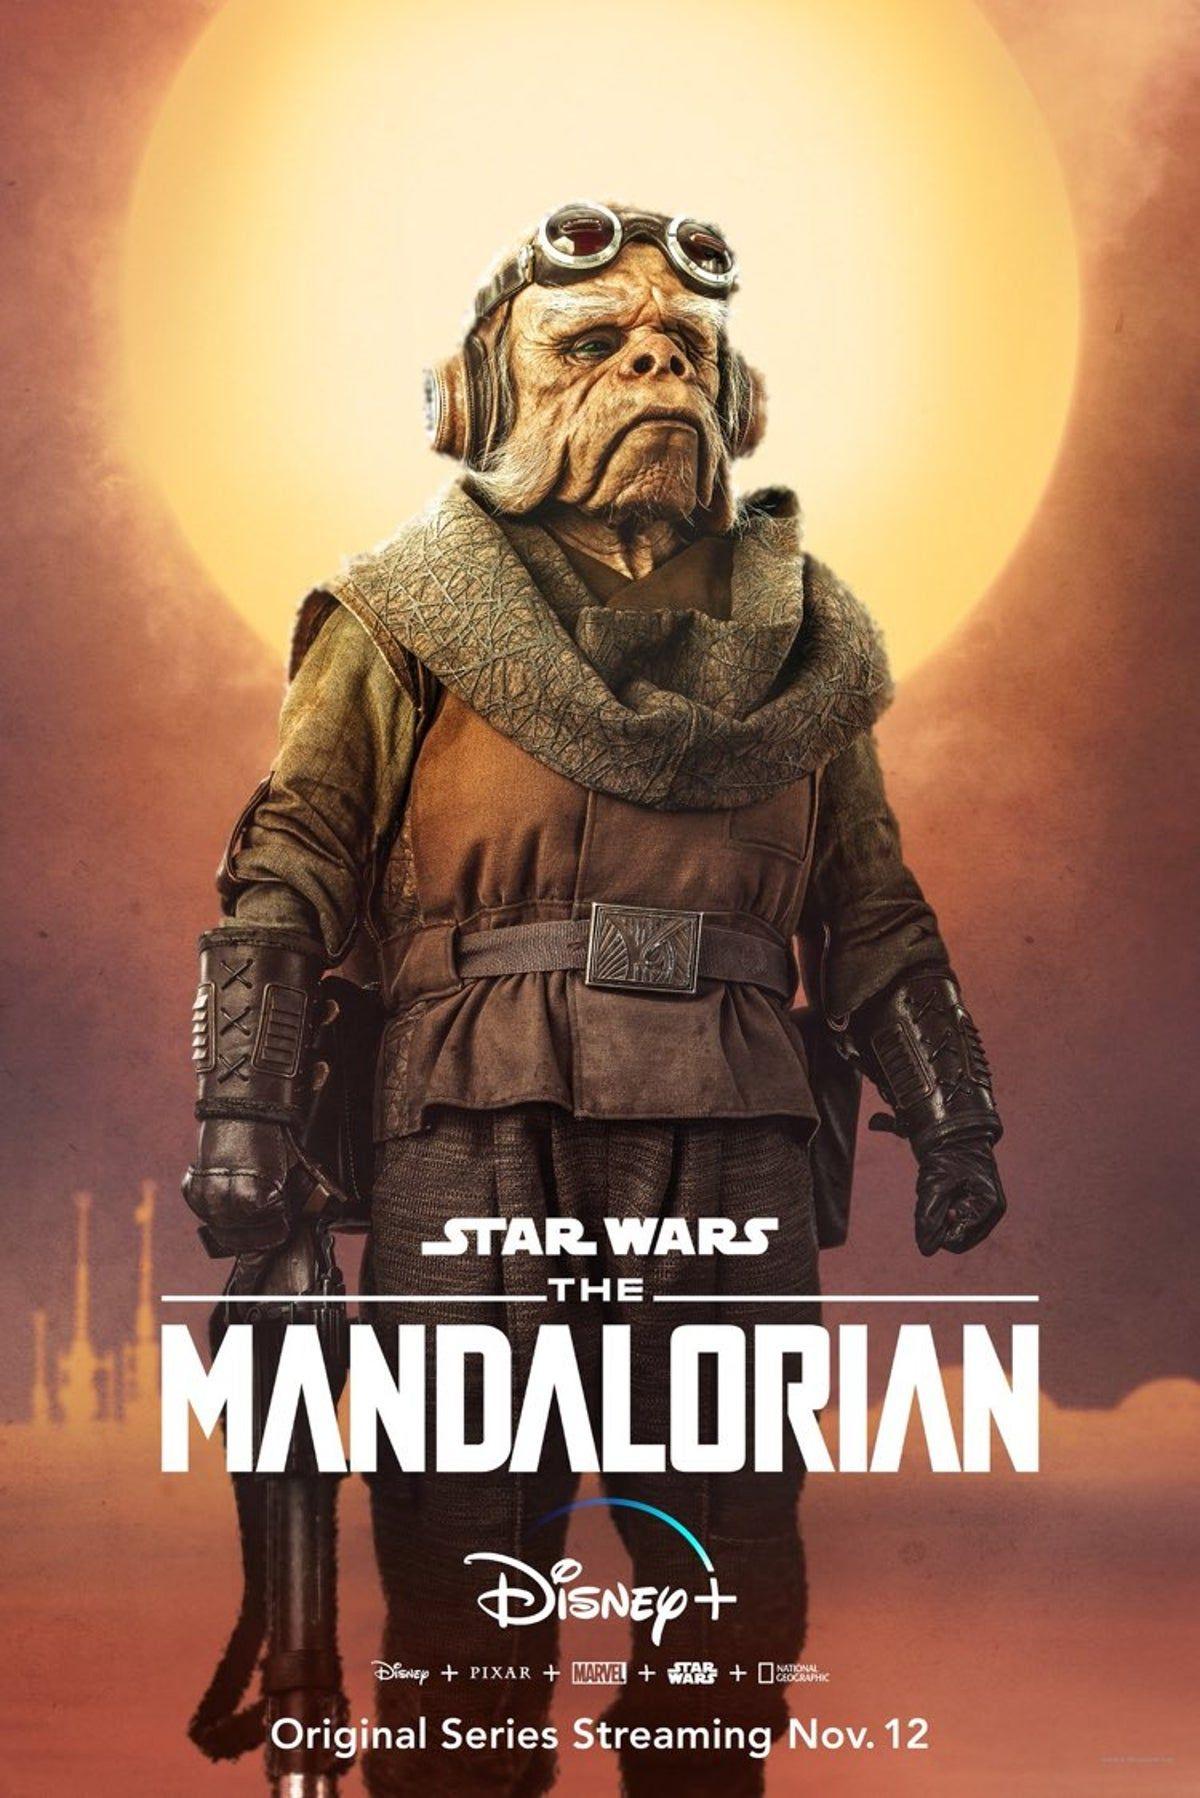 the mandalorian poster 11x17 star wars. Star wars art, Star wars